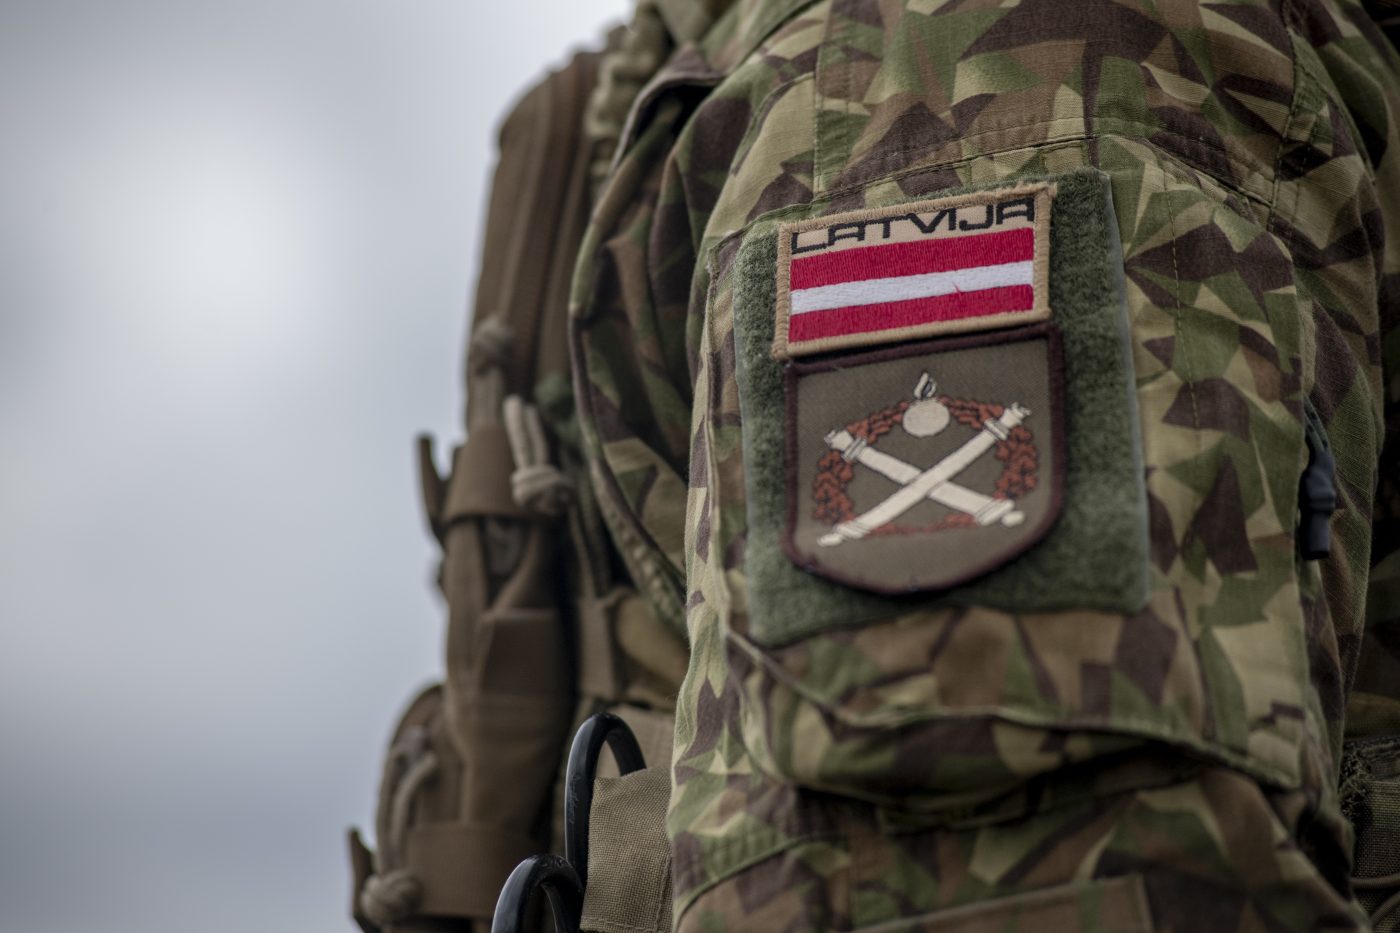 Latvija atnaujino privalomąjį šaukimą į kariuomenę